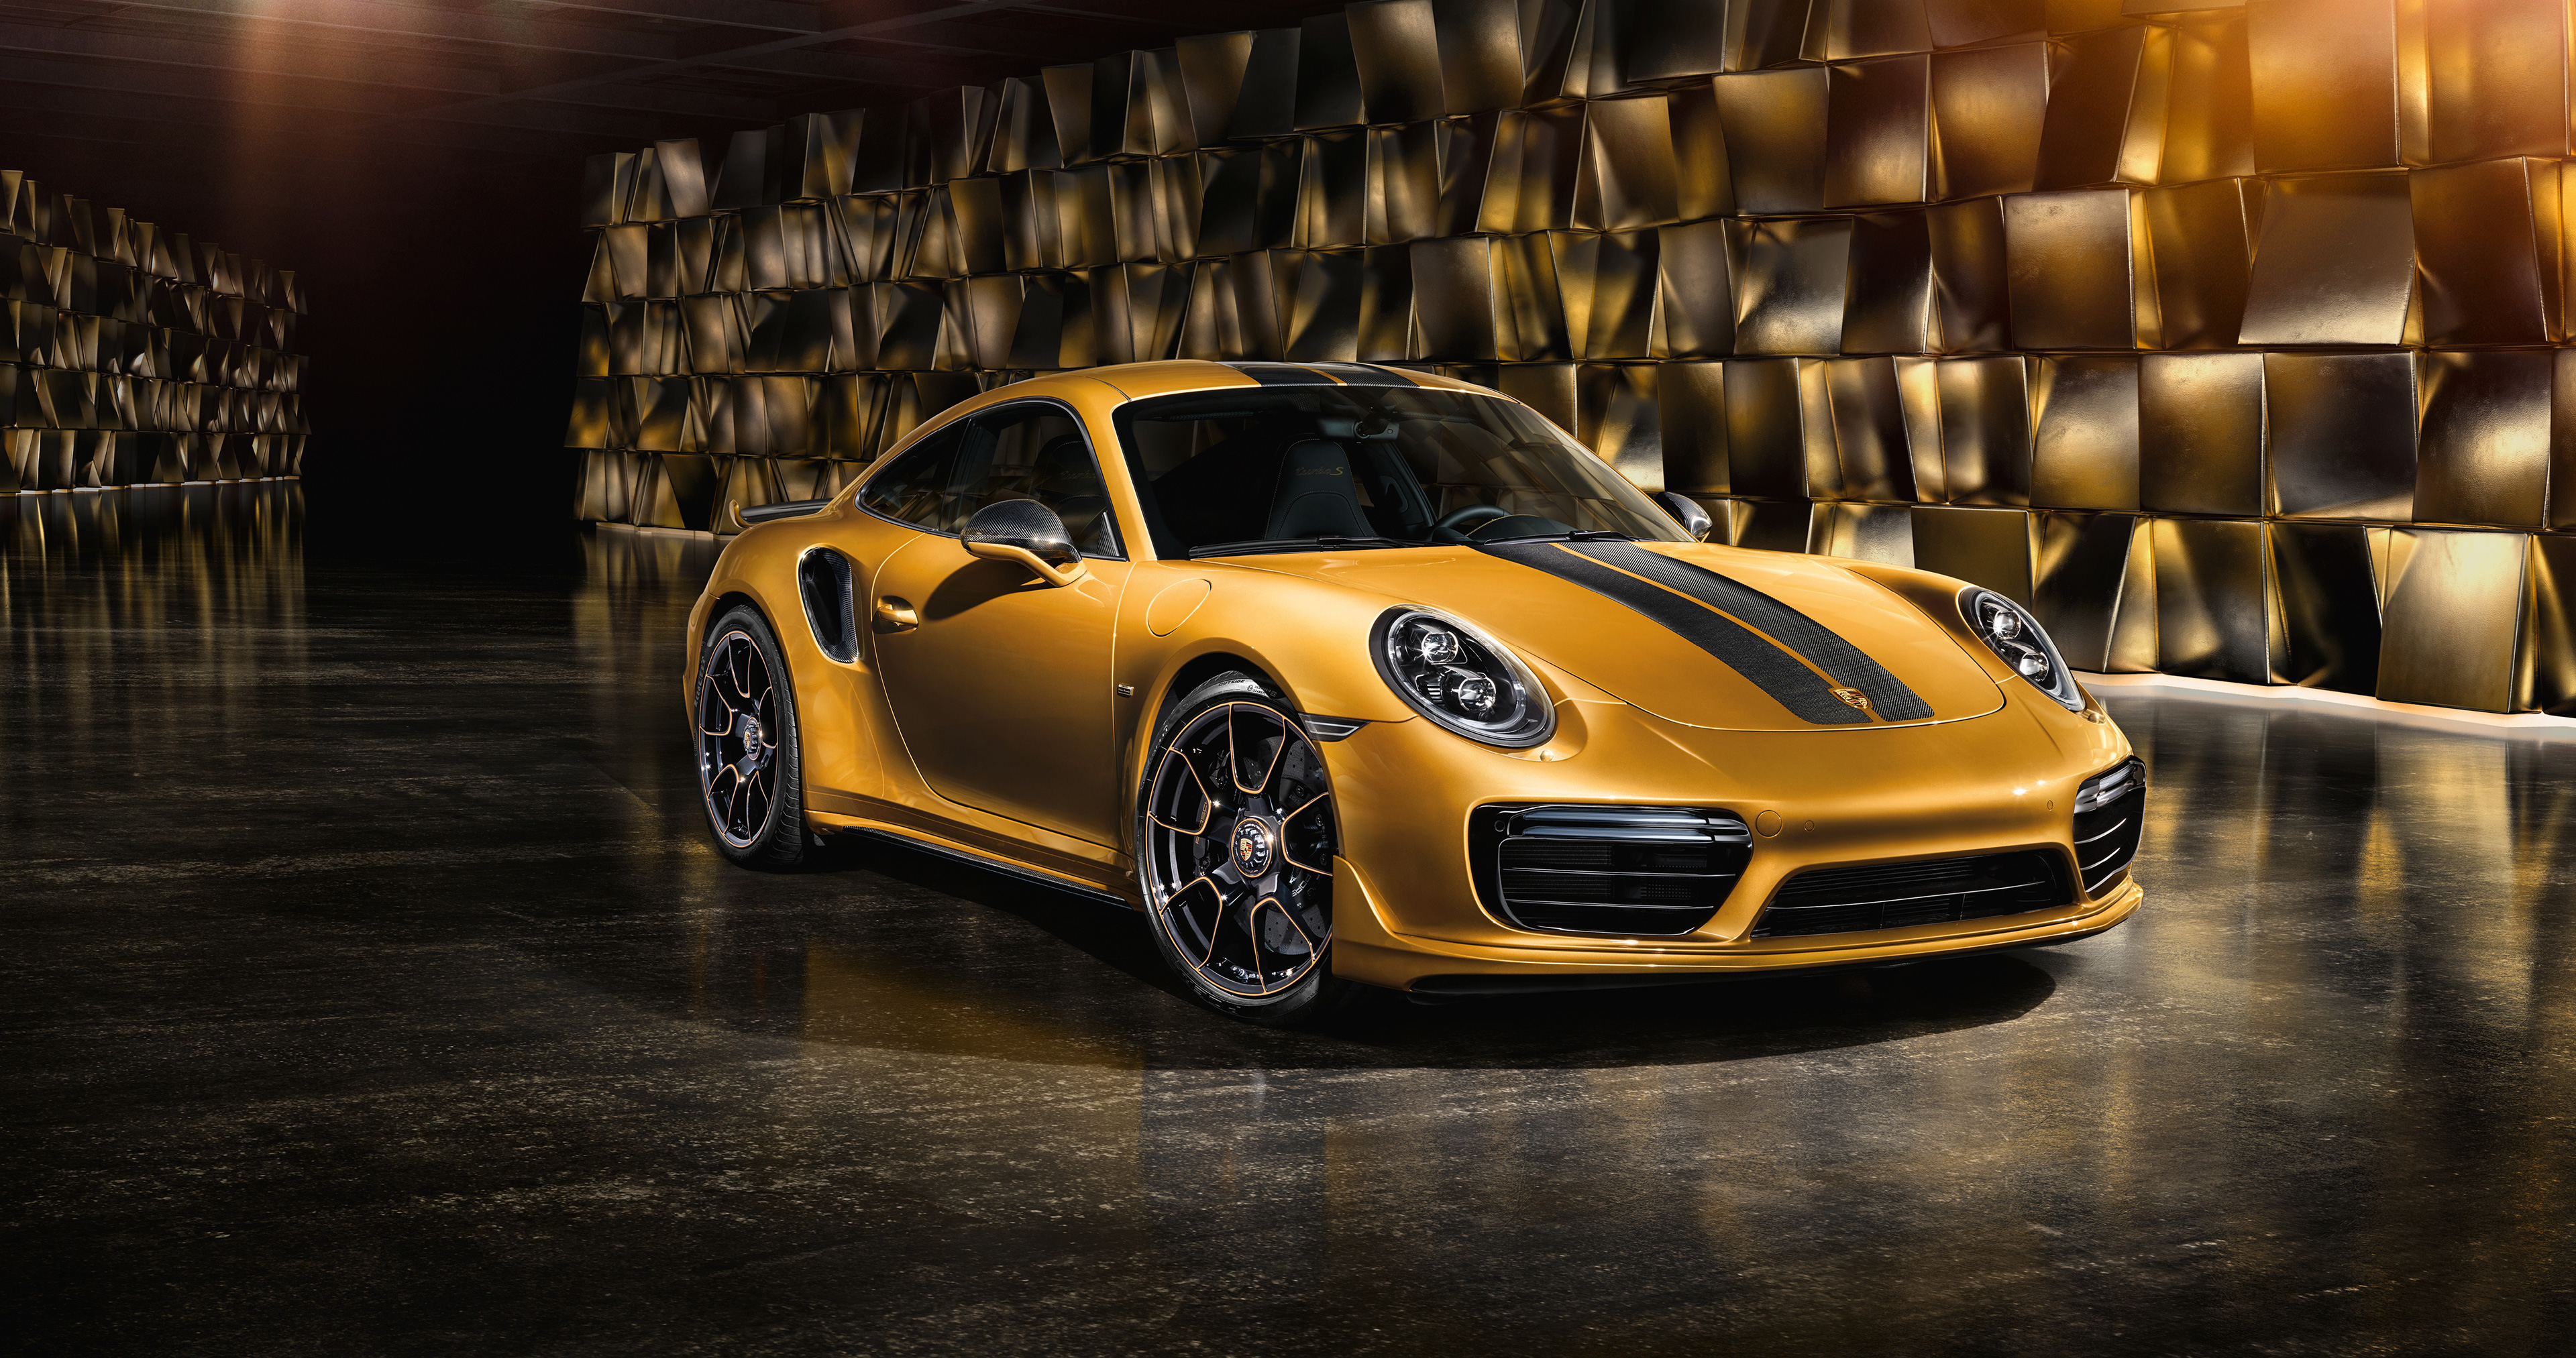 Wallpapers Porsche 911 Porsche golden on the desktop